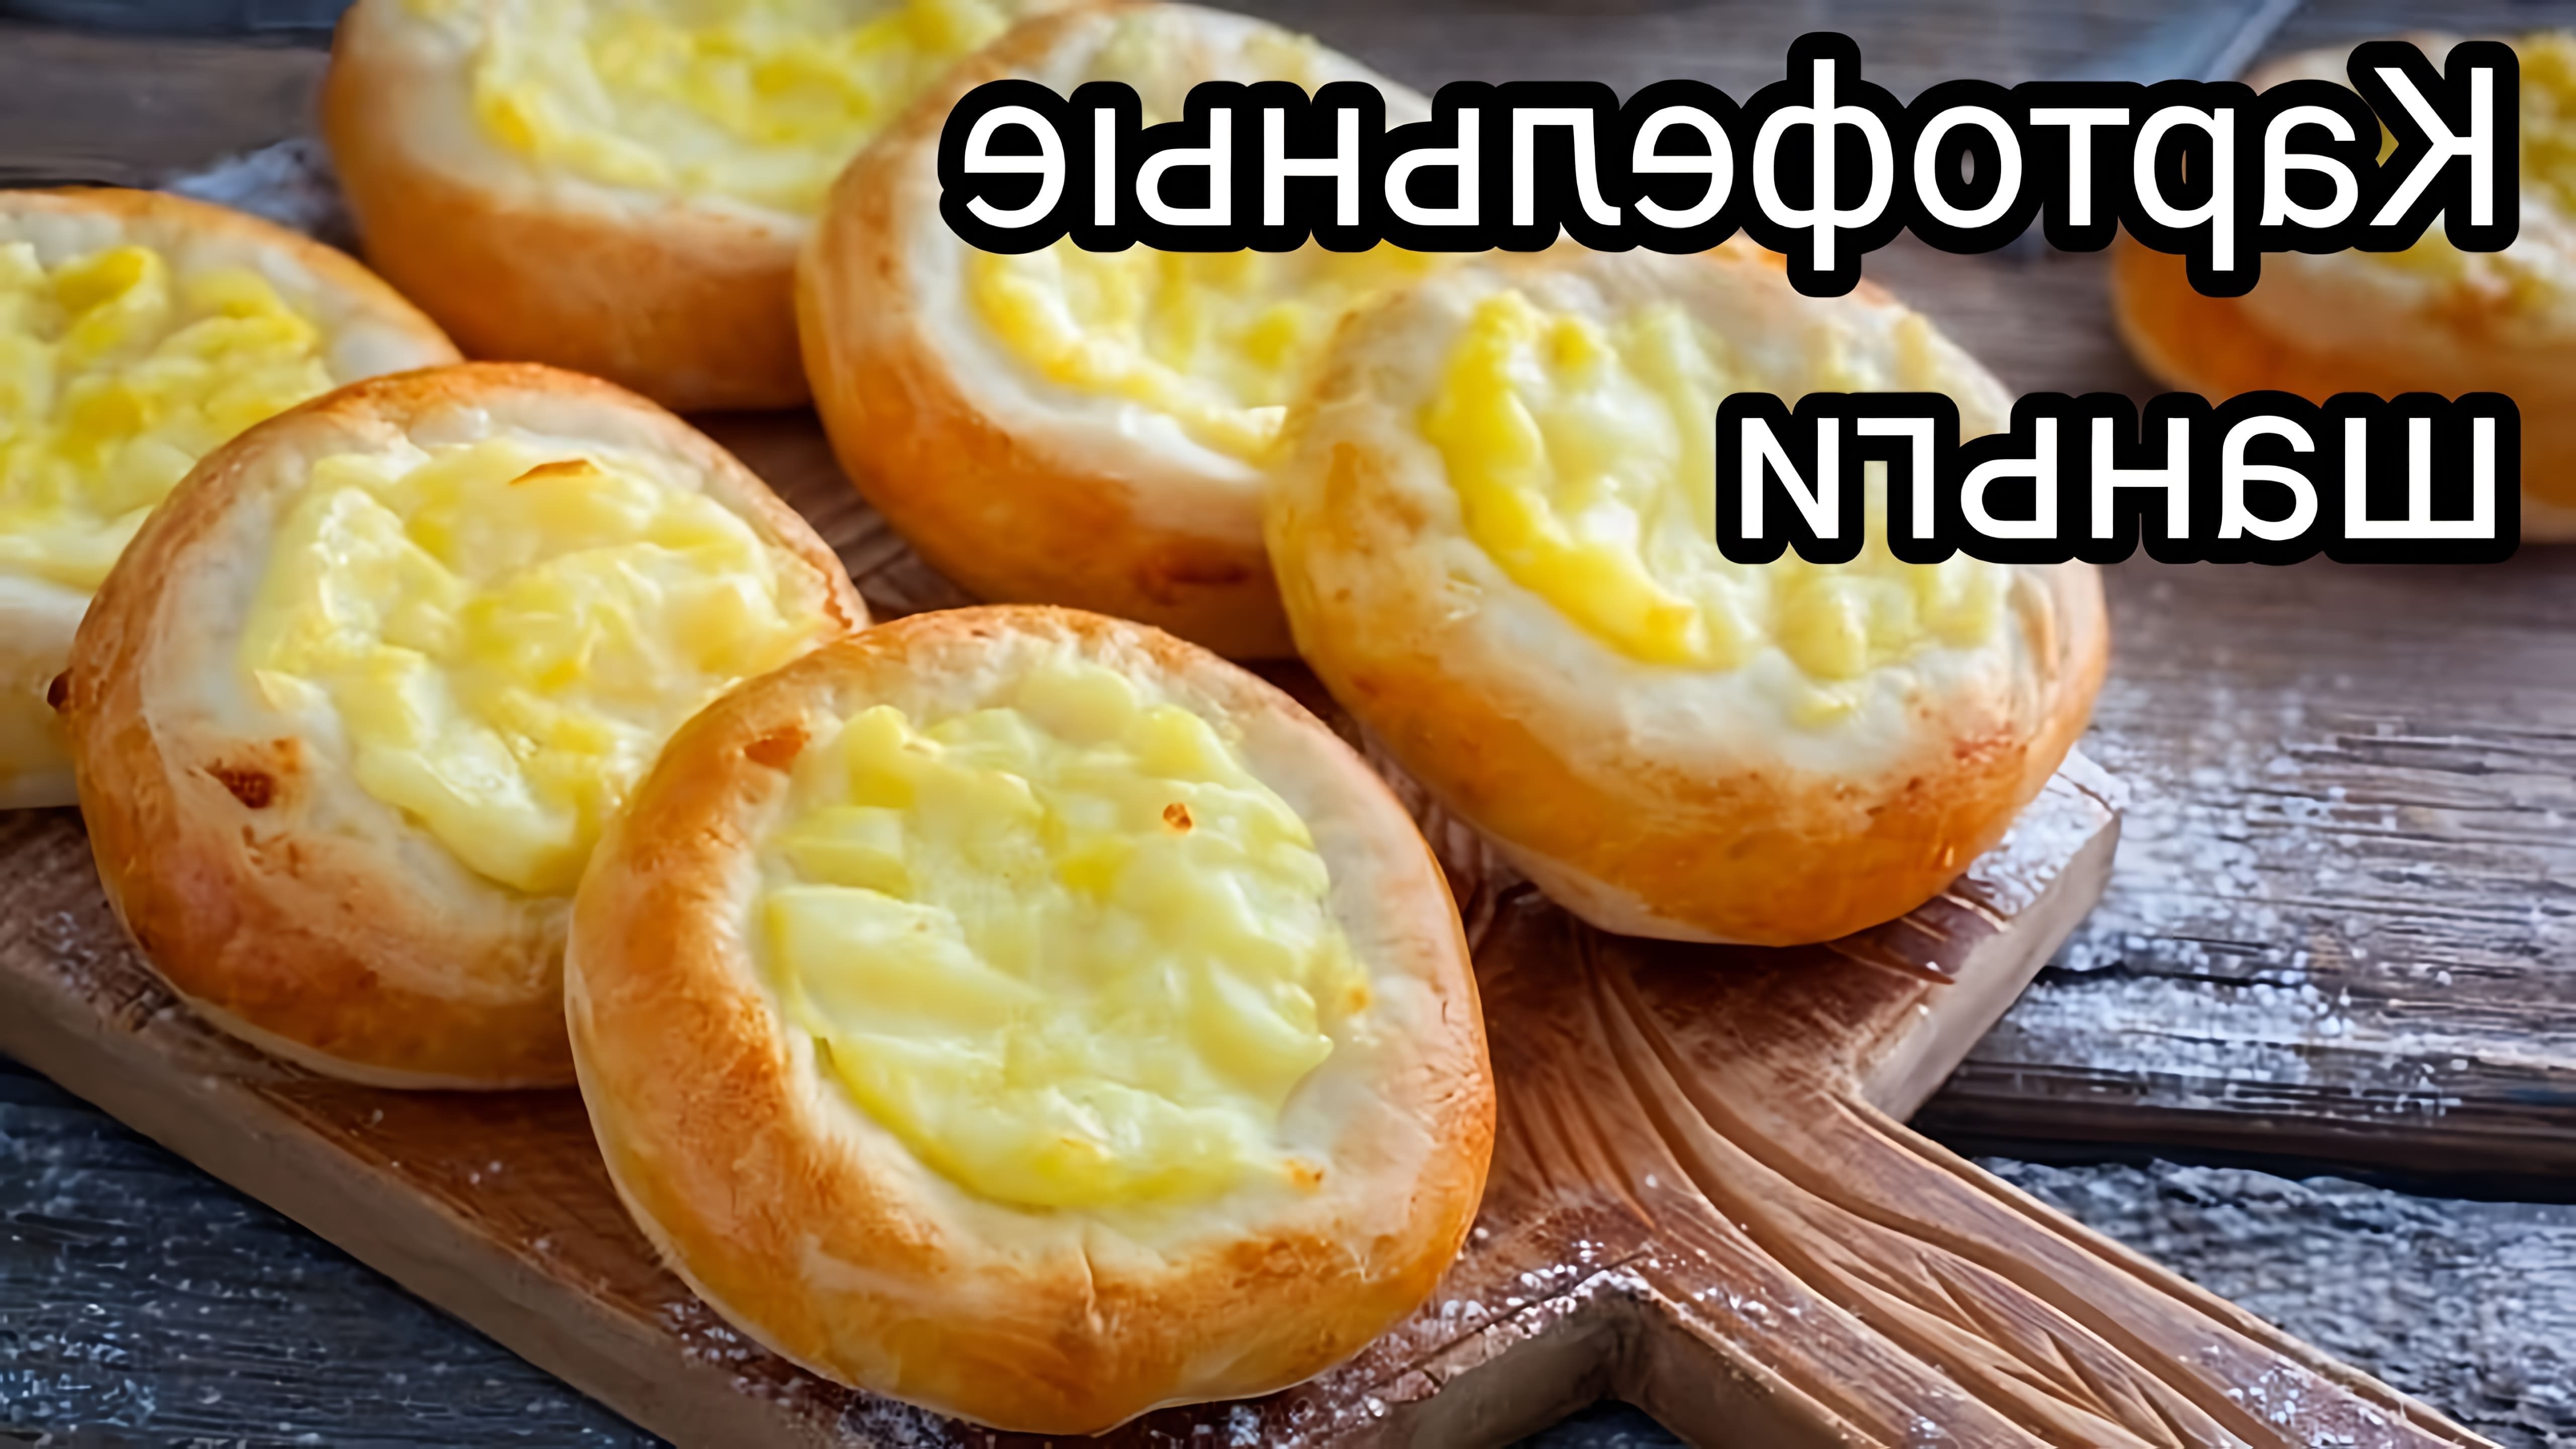 Картофельные шаньги с сыром - это традиционное блюдо русской кухни, которое готовится из картофельного теста с добавлением сыра